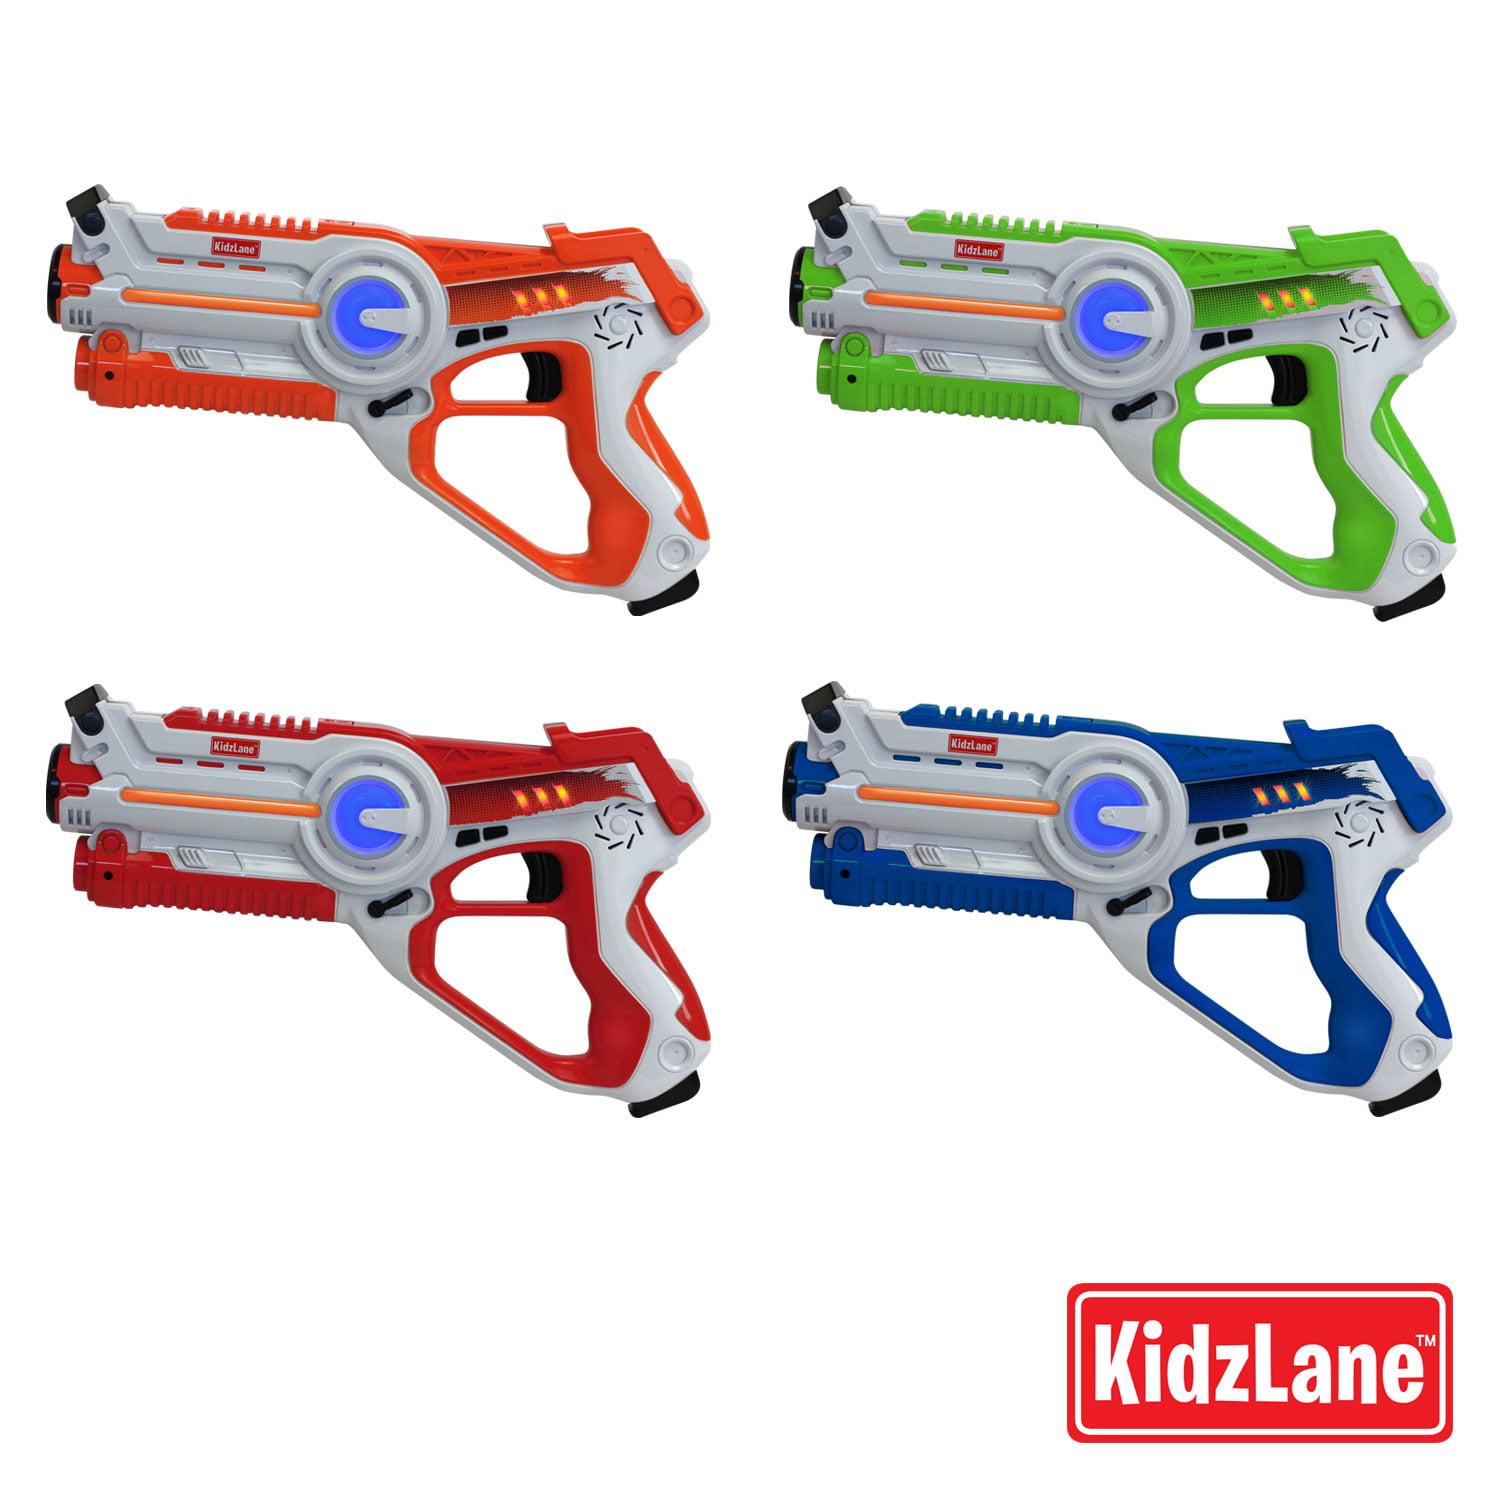 Kidzlane Laser Tag Laser Tag Guns Set of 4 Multi Function Lazer Tag Guns 